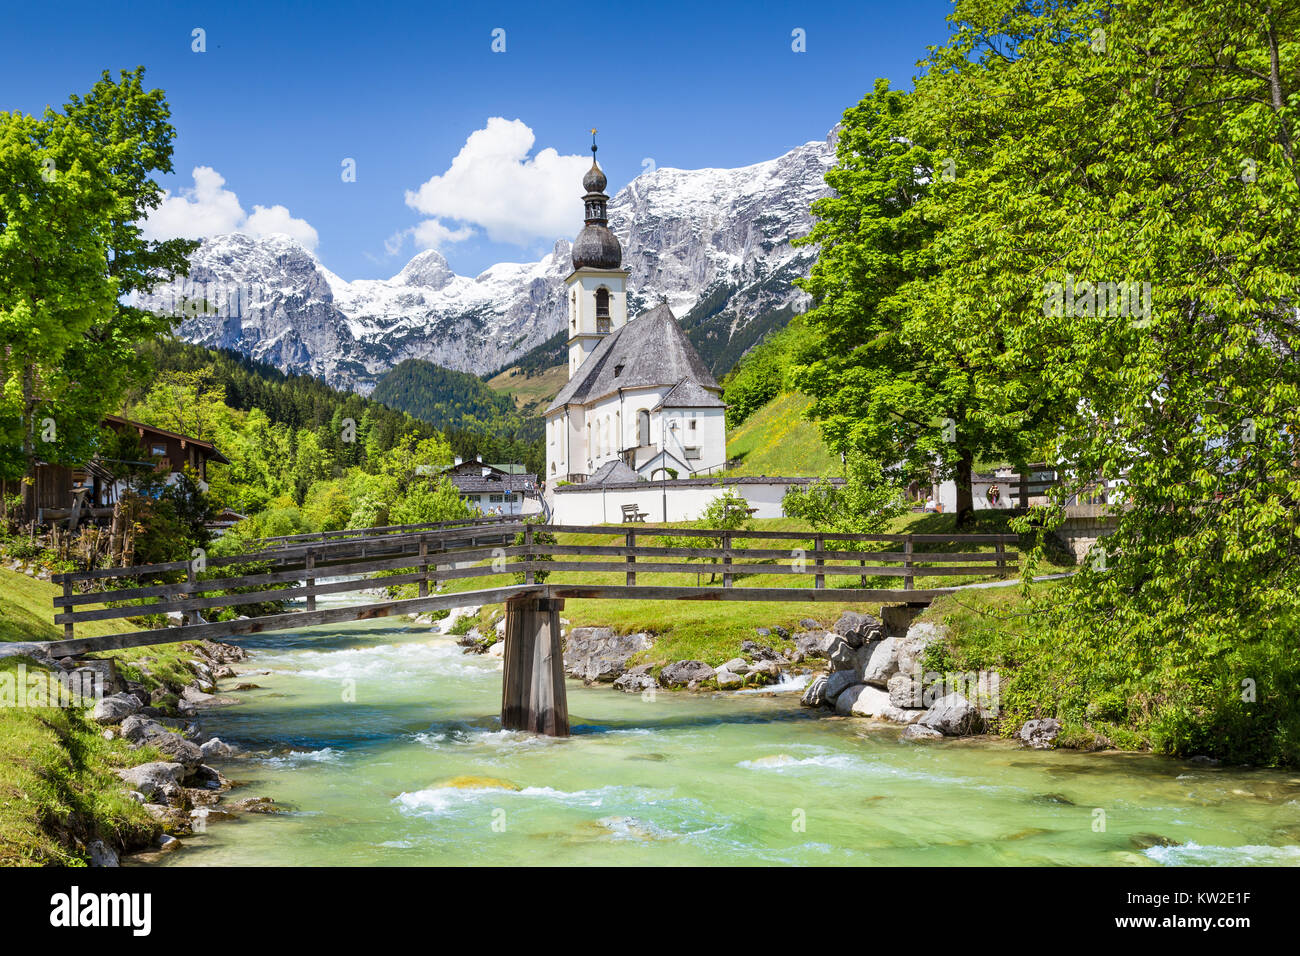 Paysage de montagne pittoresque dans les Alpes bavaroises avec célèbre église paroissiale de Saint Sébastien dans le village de Ramsau, Nationalpark Berchtesgadener Land Banque D'Images